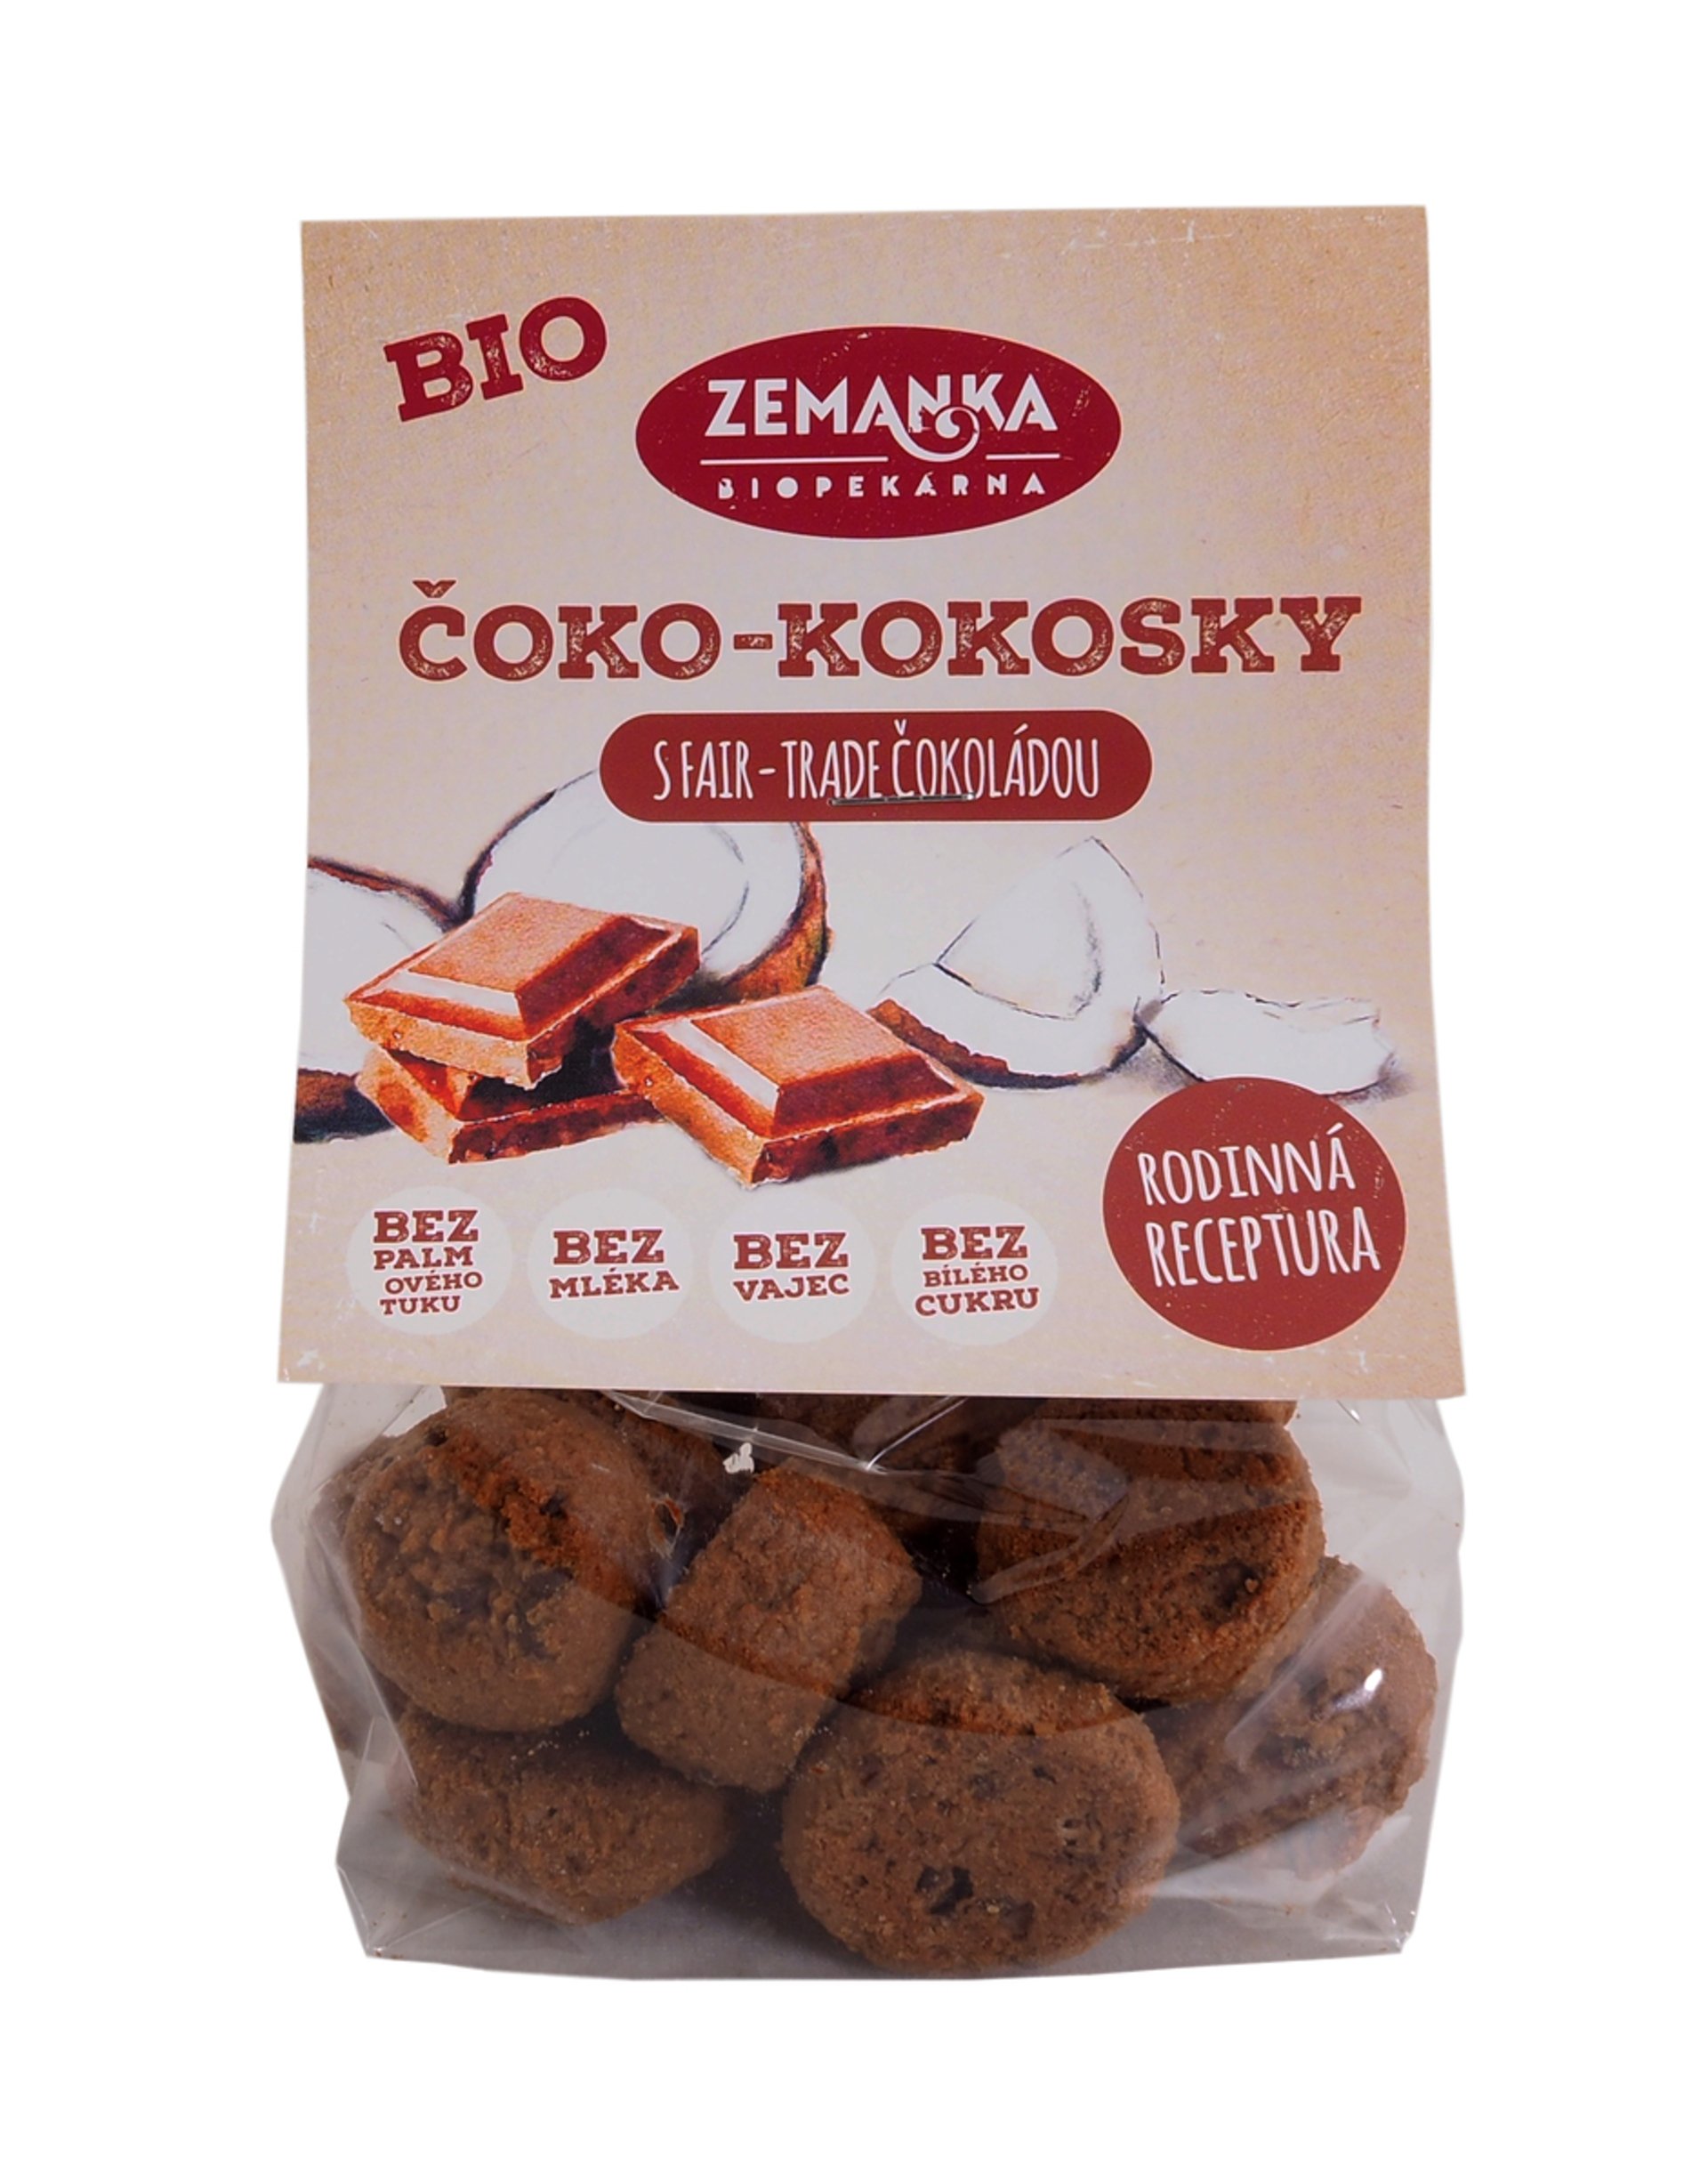 Biopekáreň Zemanka BIO čoko - kokosky s FAIR-TRADE čokoládou 100 g